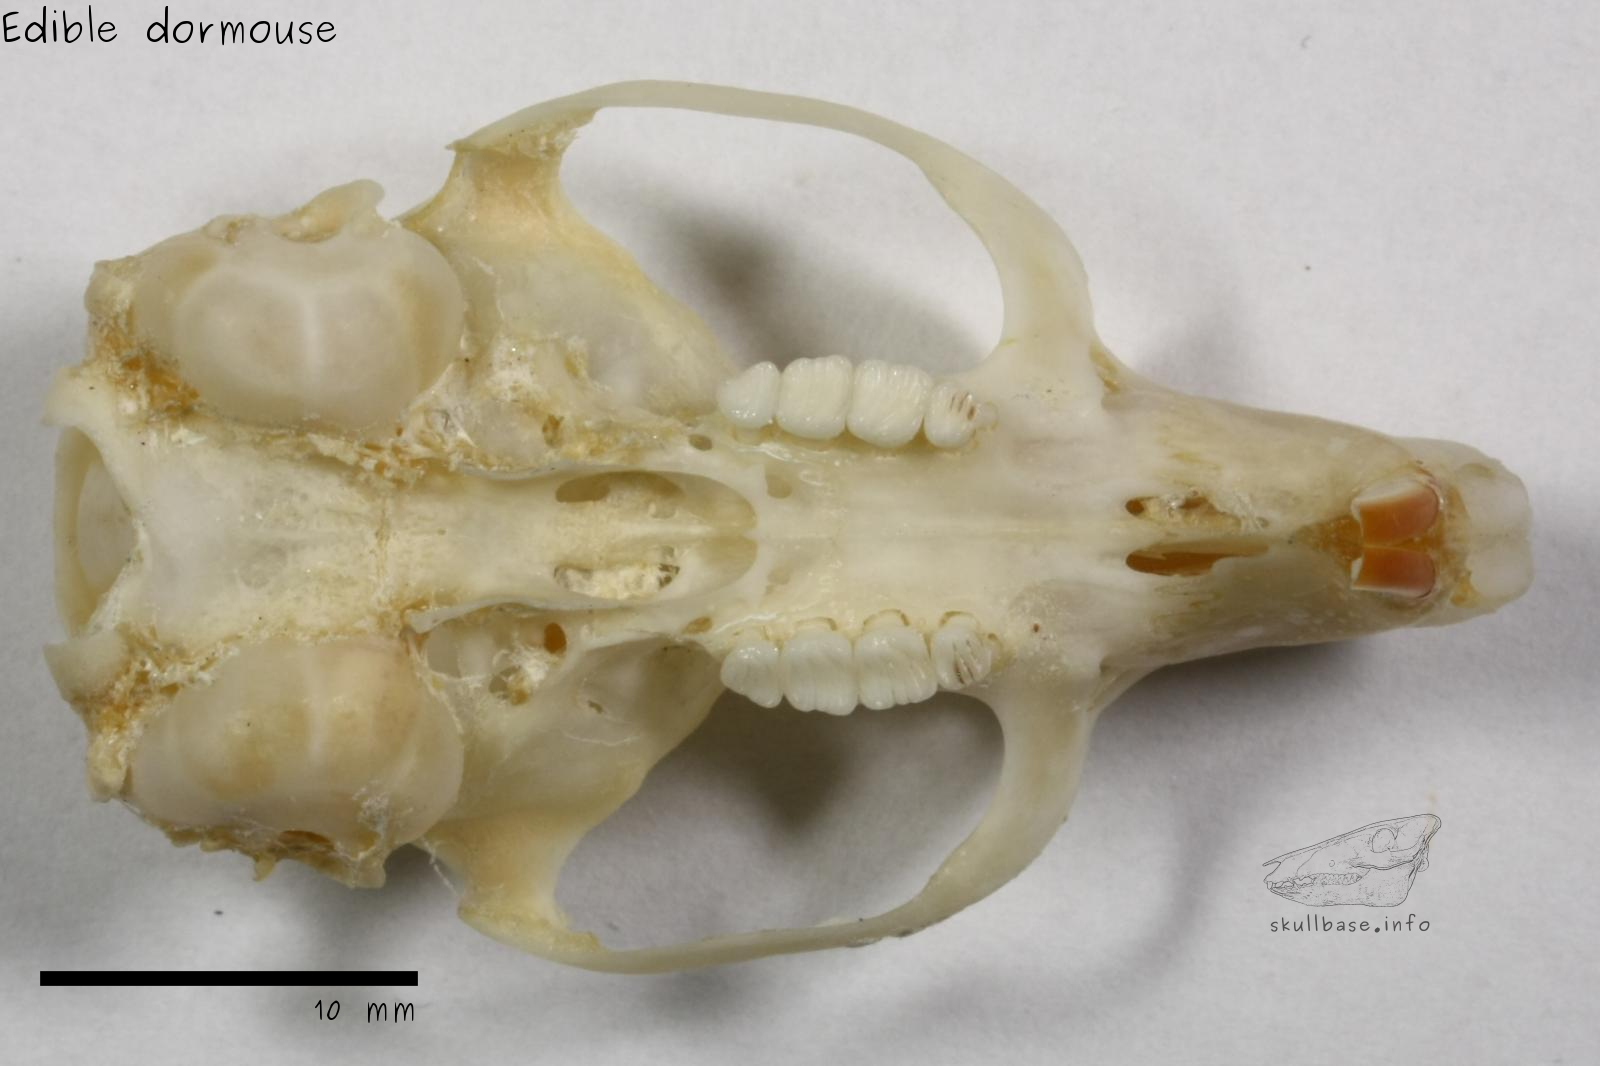 Edible dormouse (Glis glis) skull ventral view